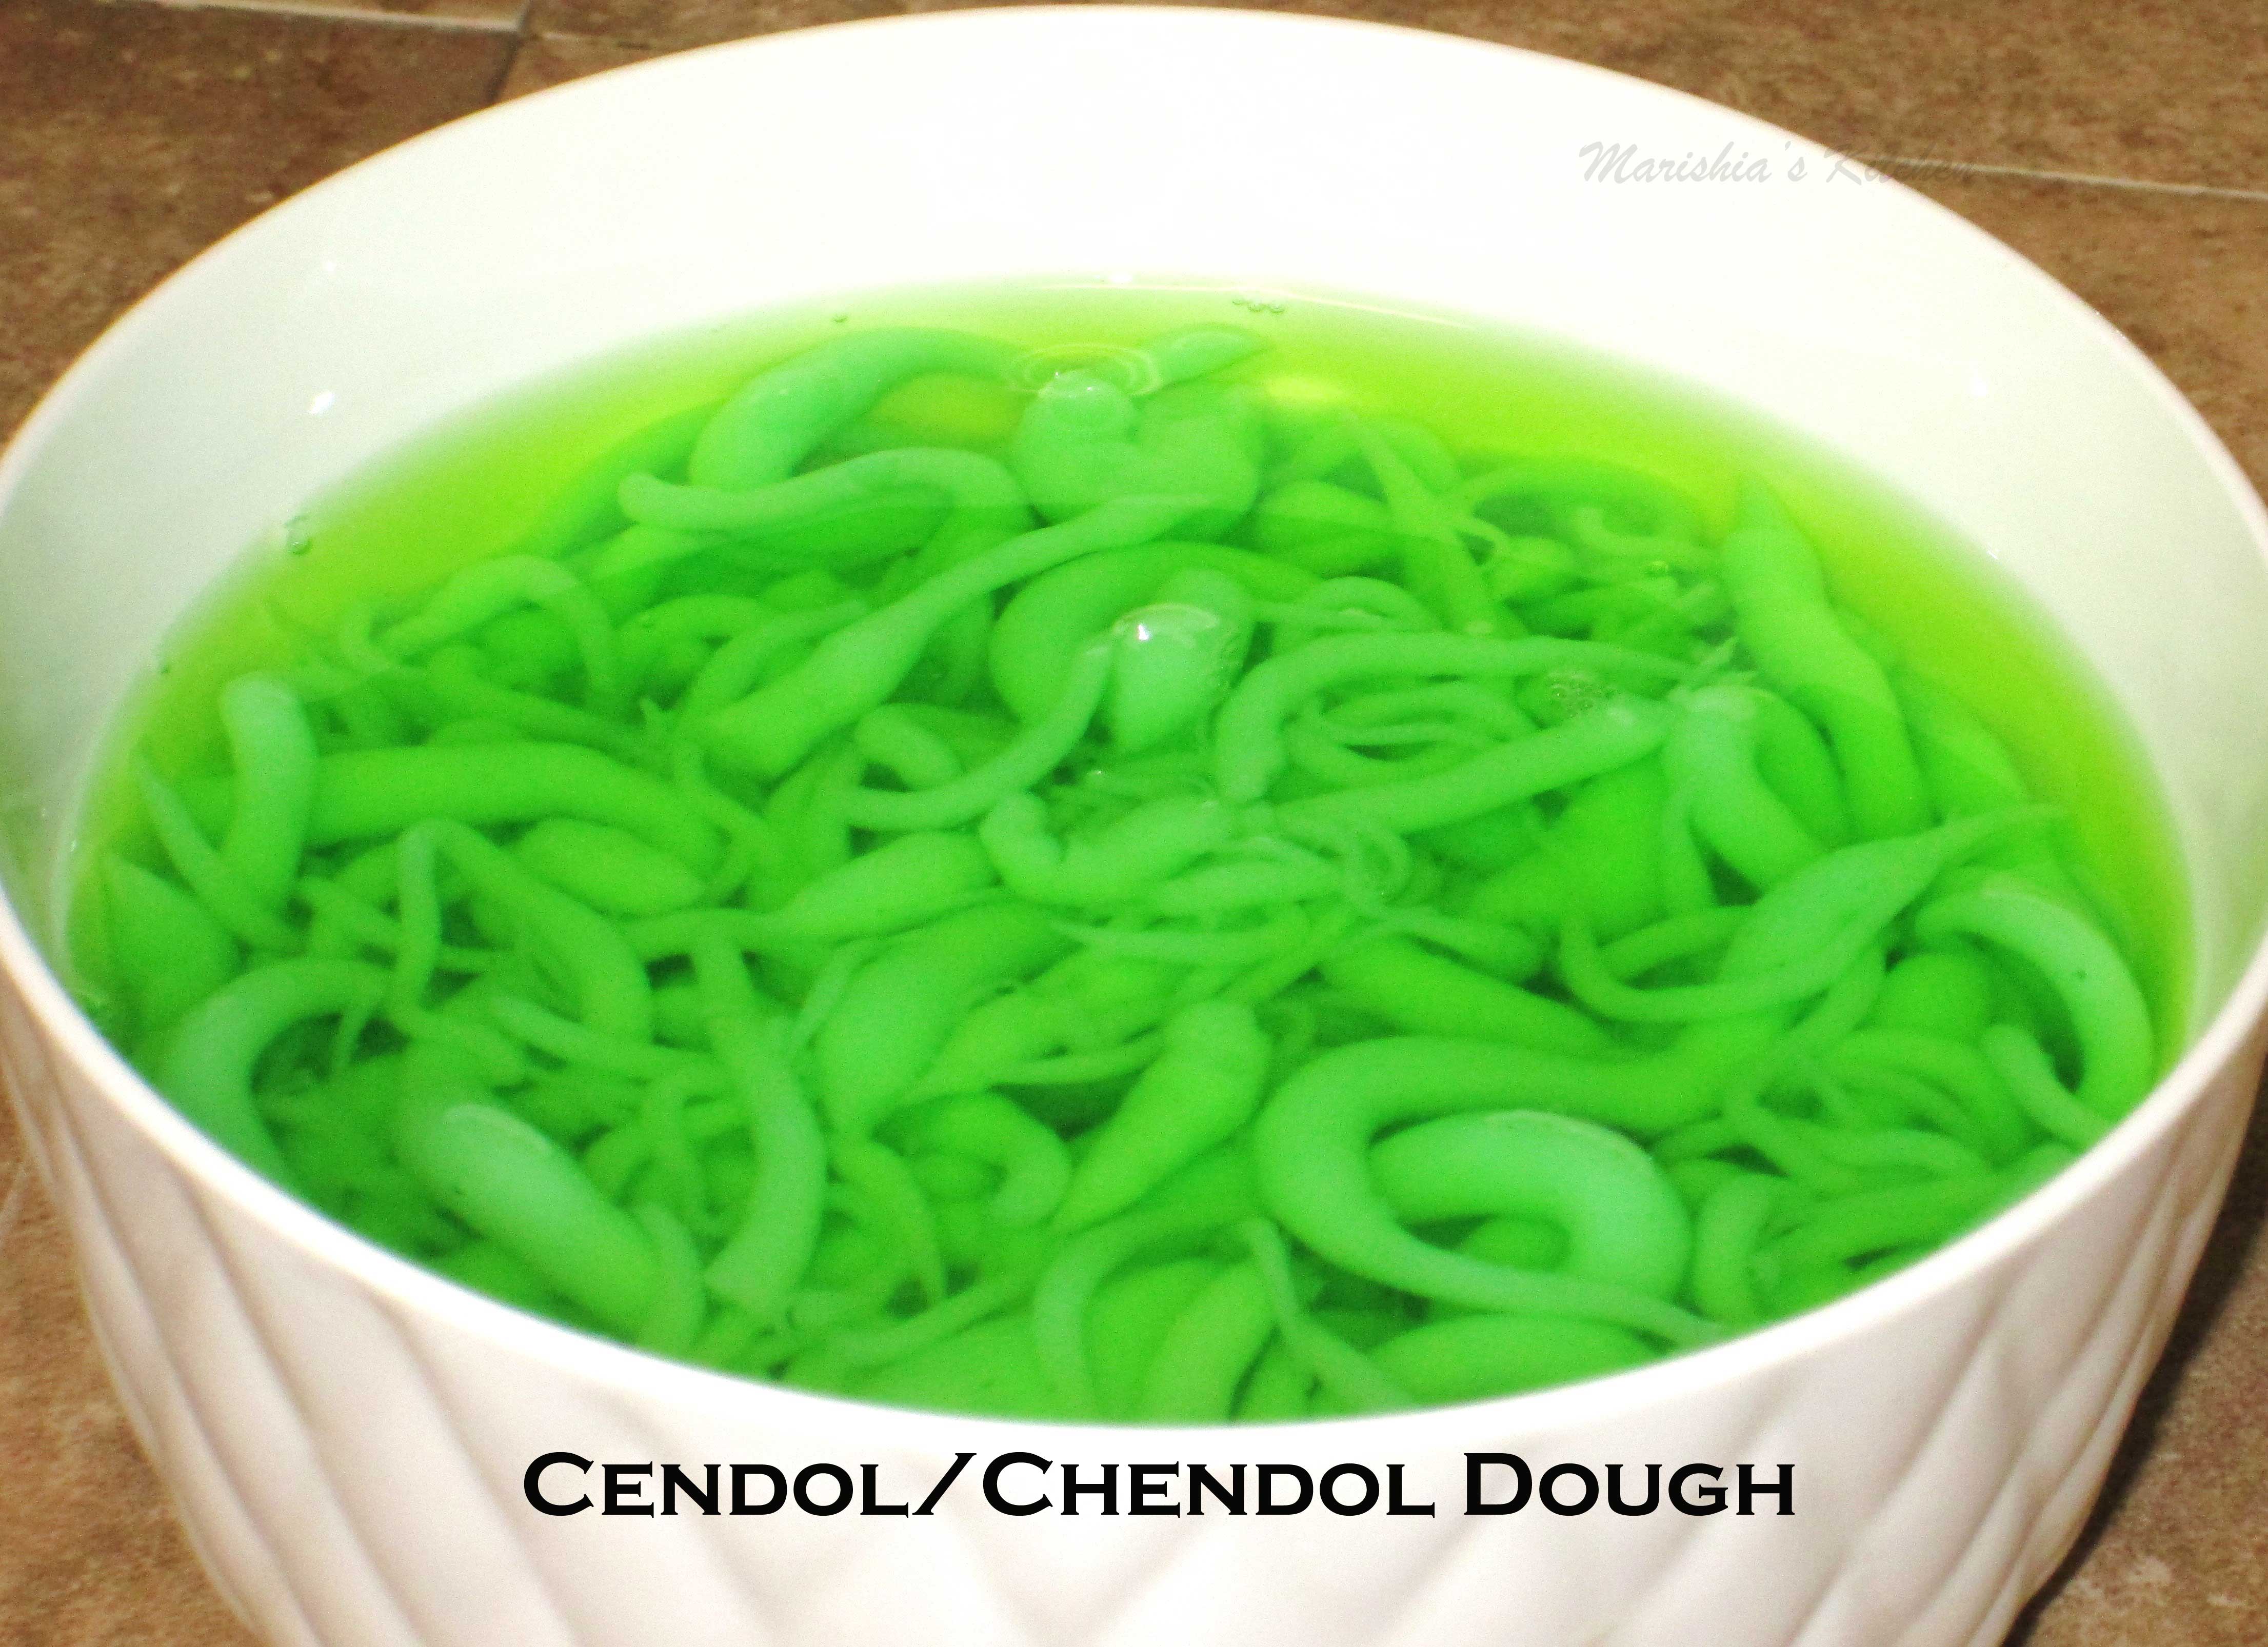 Cendol/Chendol Dough | Marishia's Kreative Kitchen